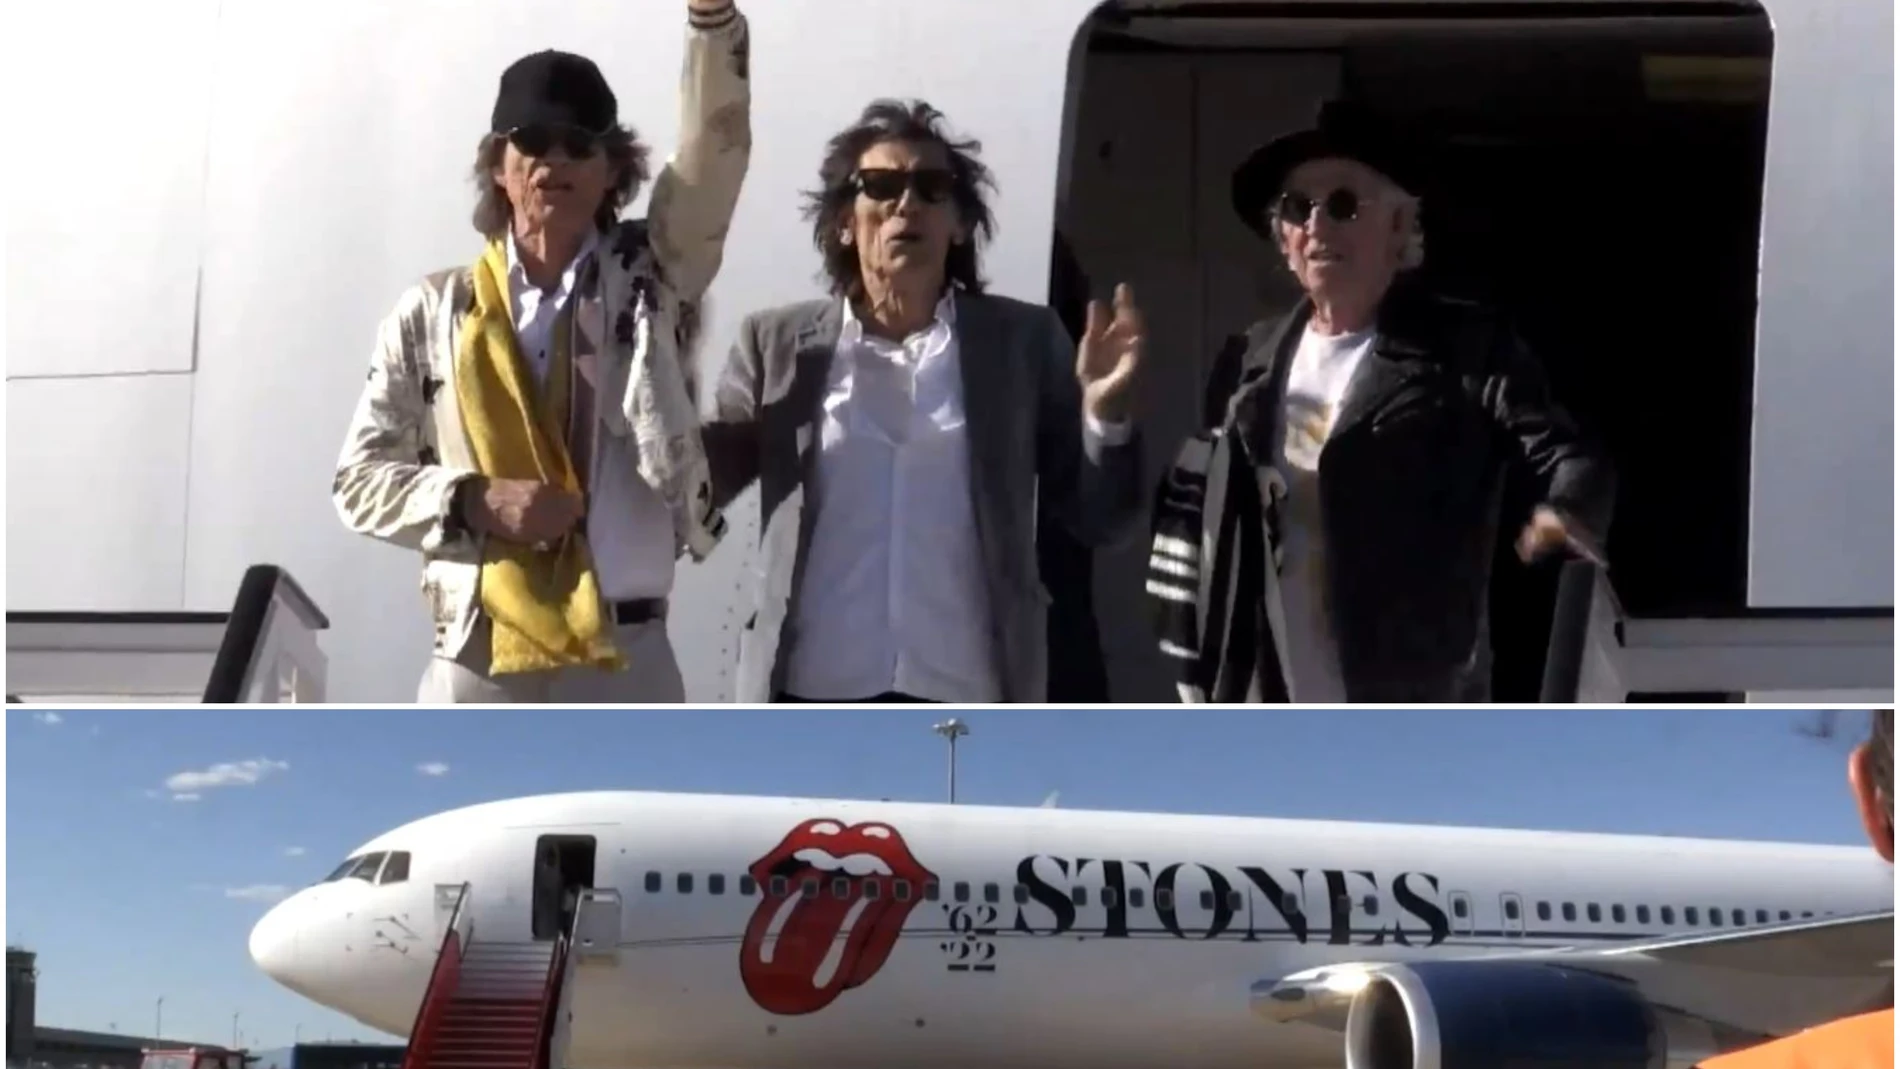 Vídeo: los Rolling Stones aterrizan en Madrid una semana antes de su concierto en el Wanda Metropolitano